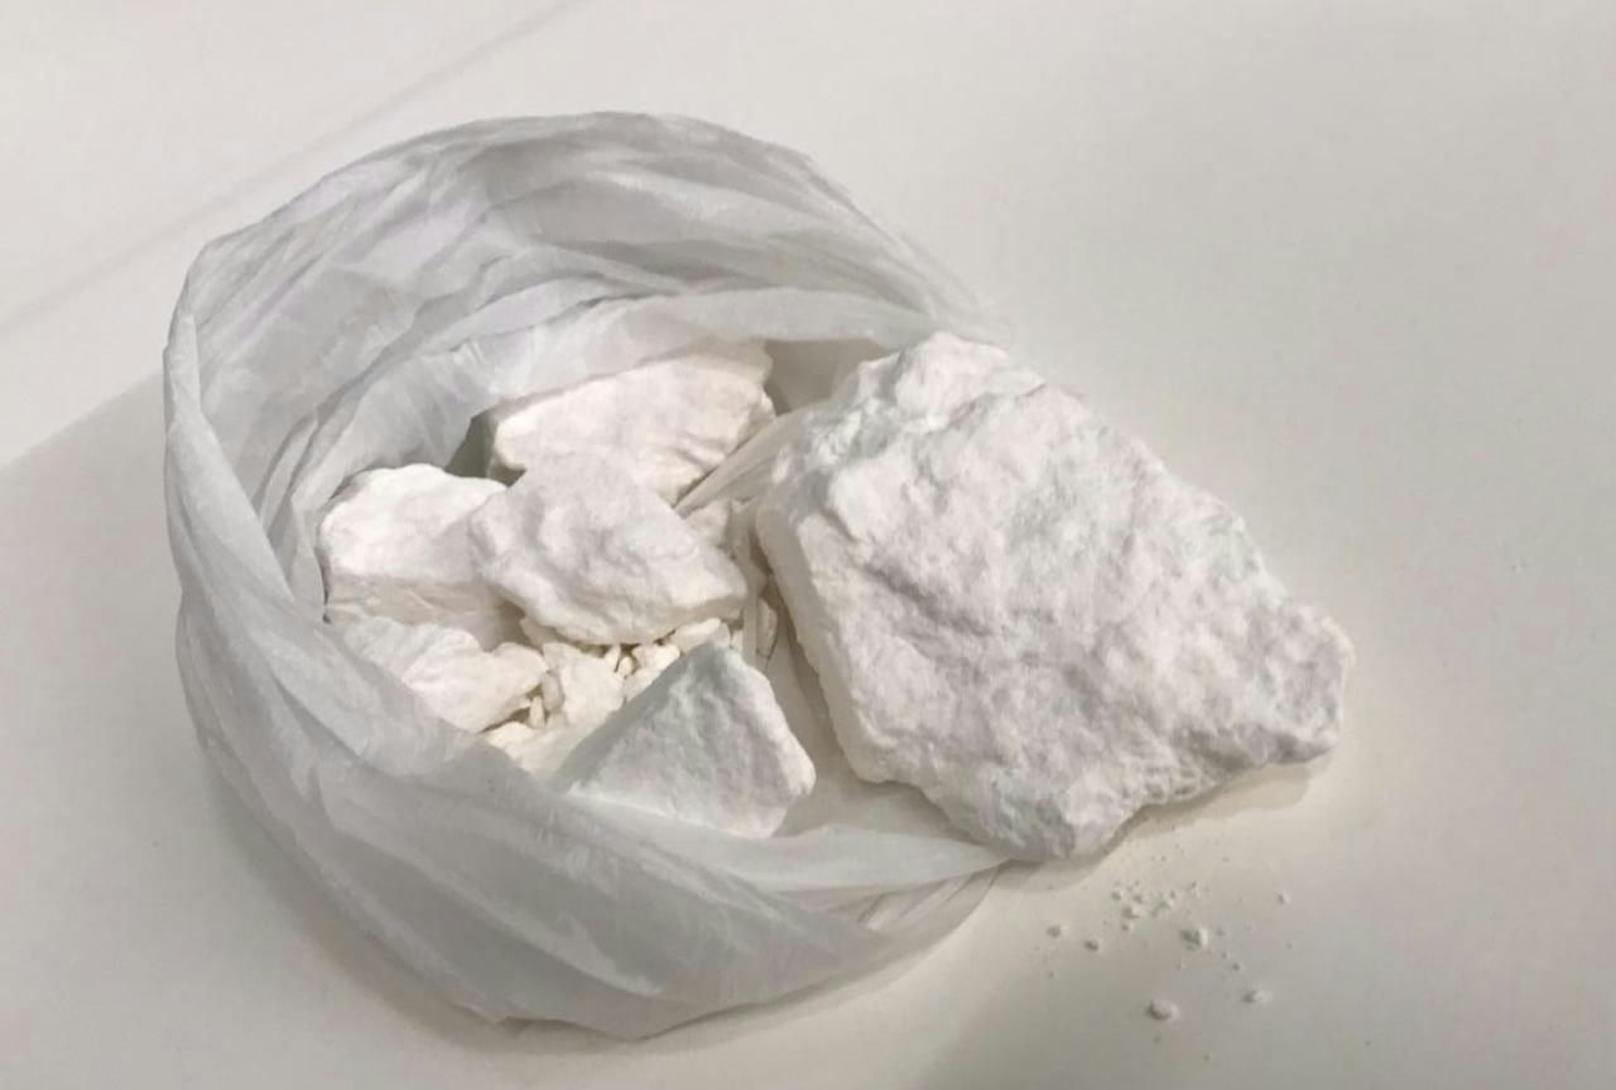 Die Beamten fanden bei dem Verdächtigen 81 Gramm pures Kokain.